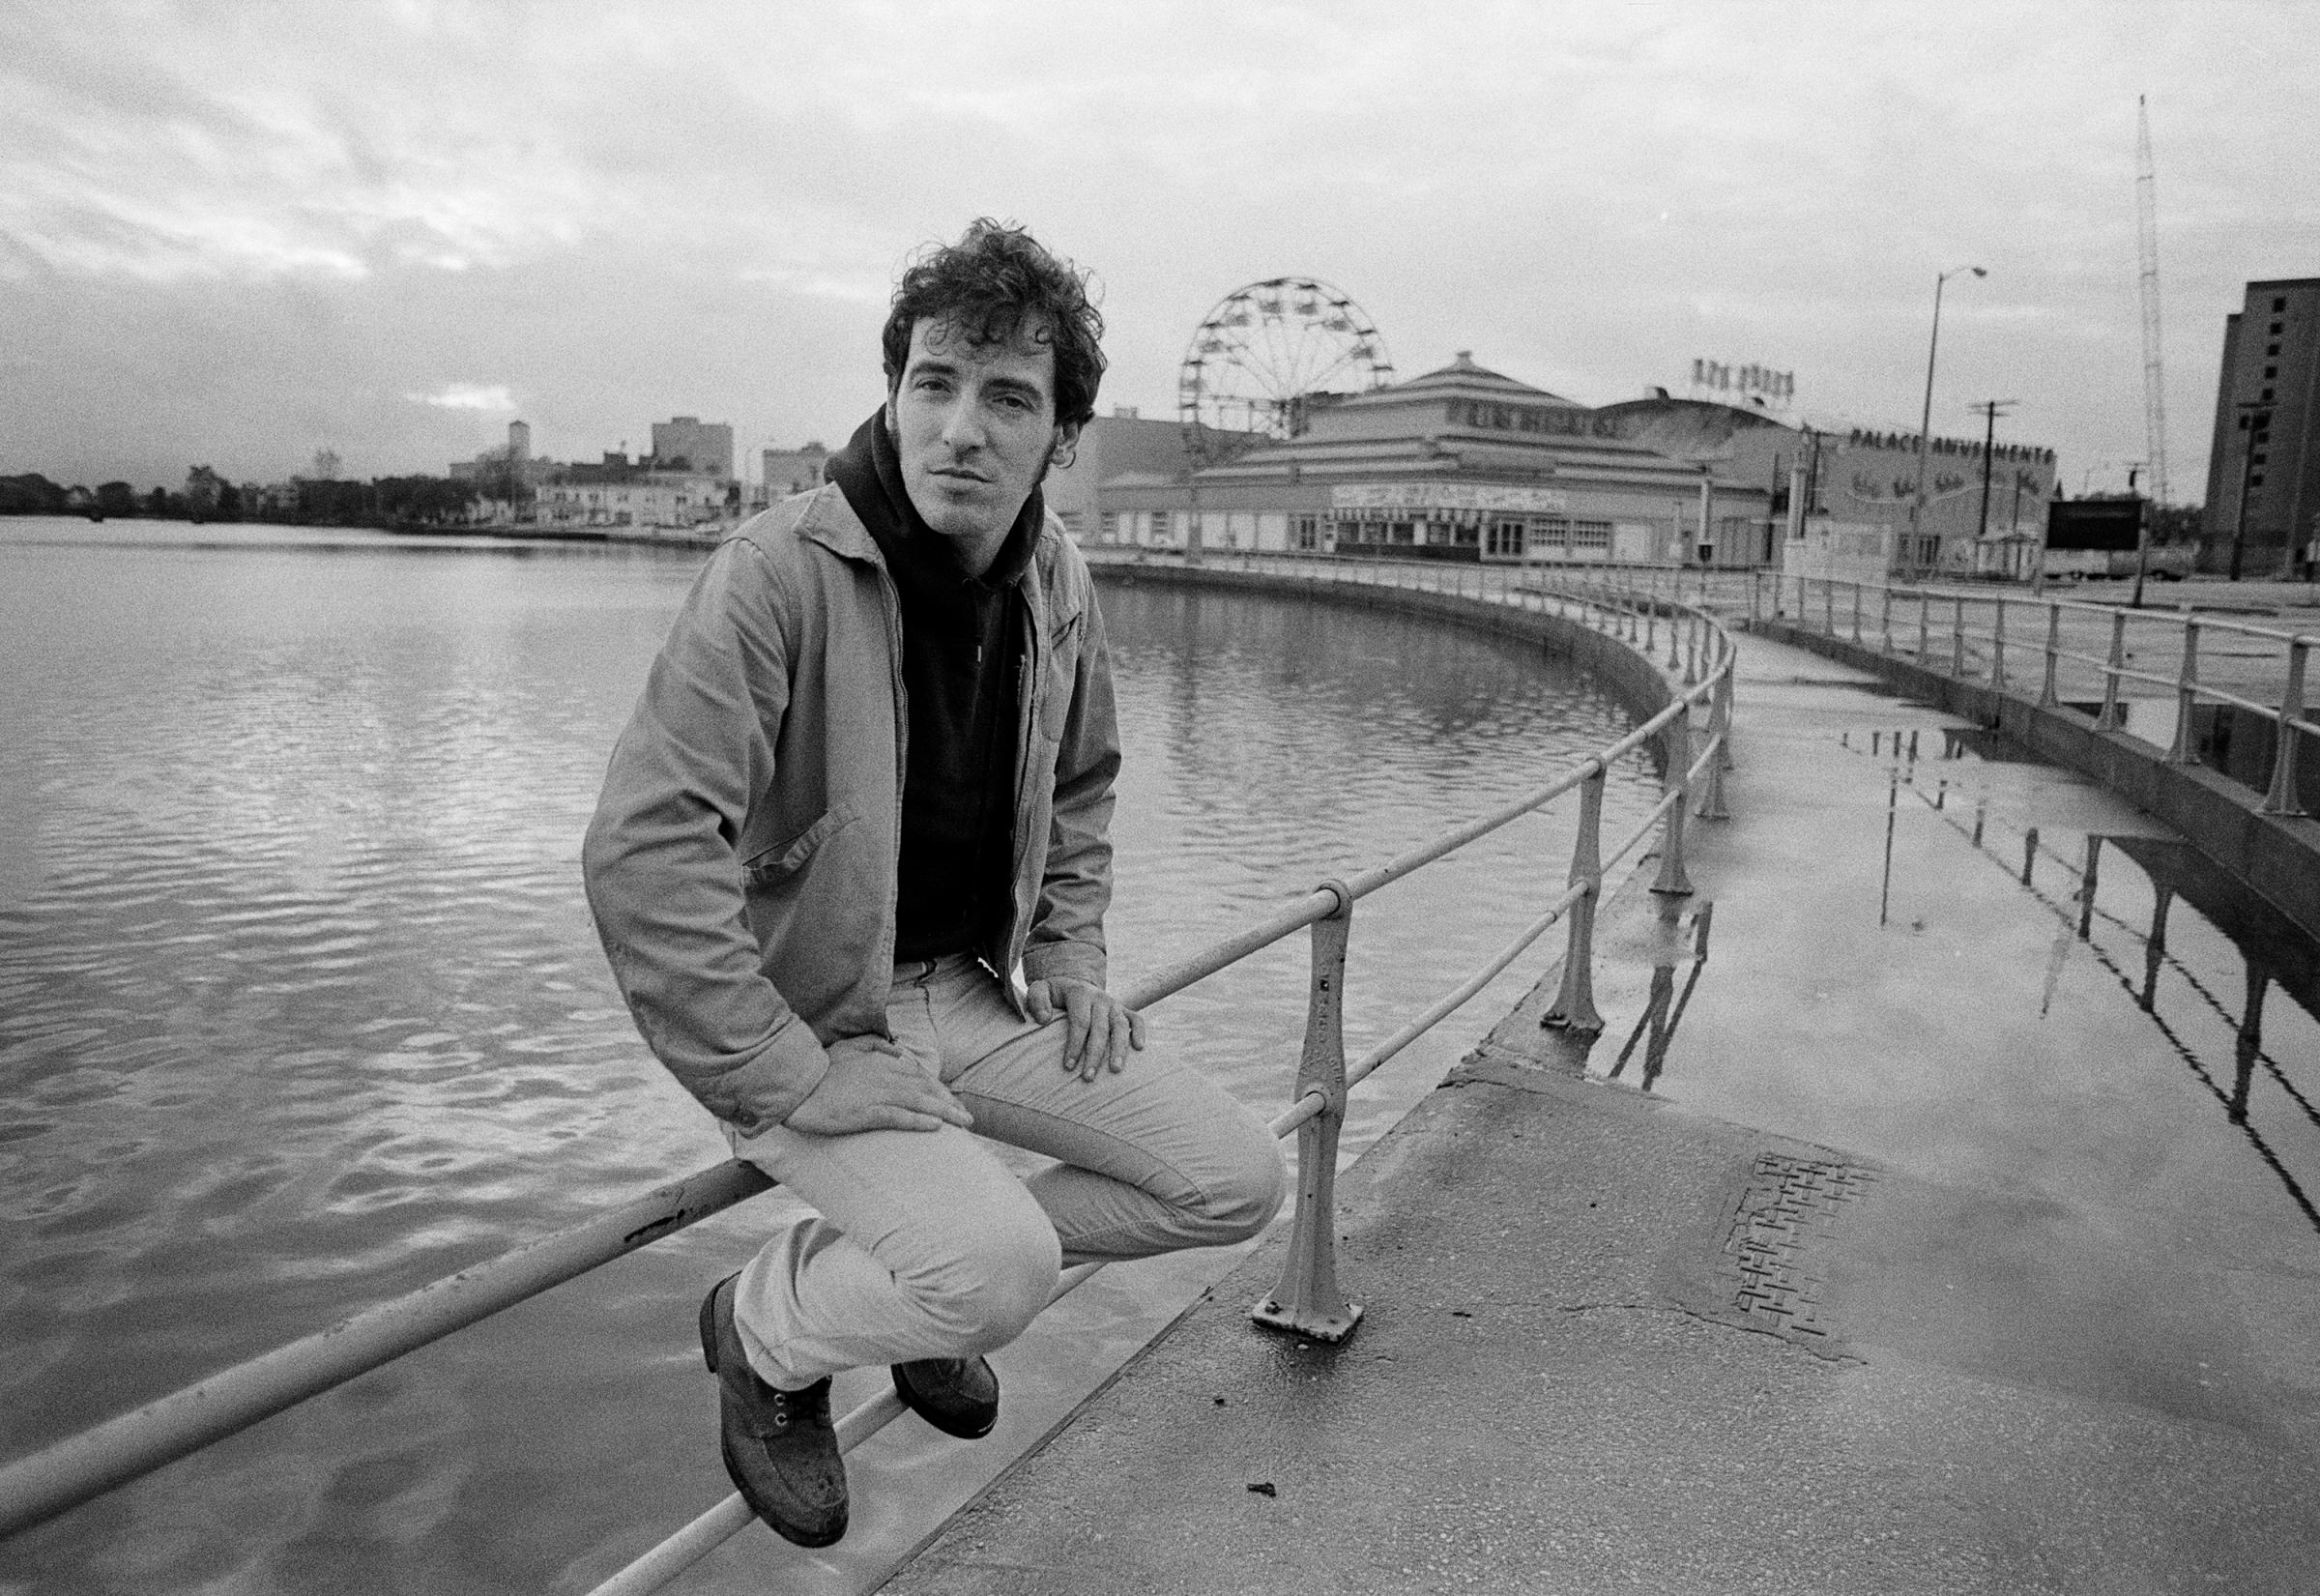 Bruce Springsteen is seen near Wesley Lake in Asbury Park, N.J. in 1979.